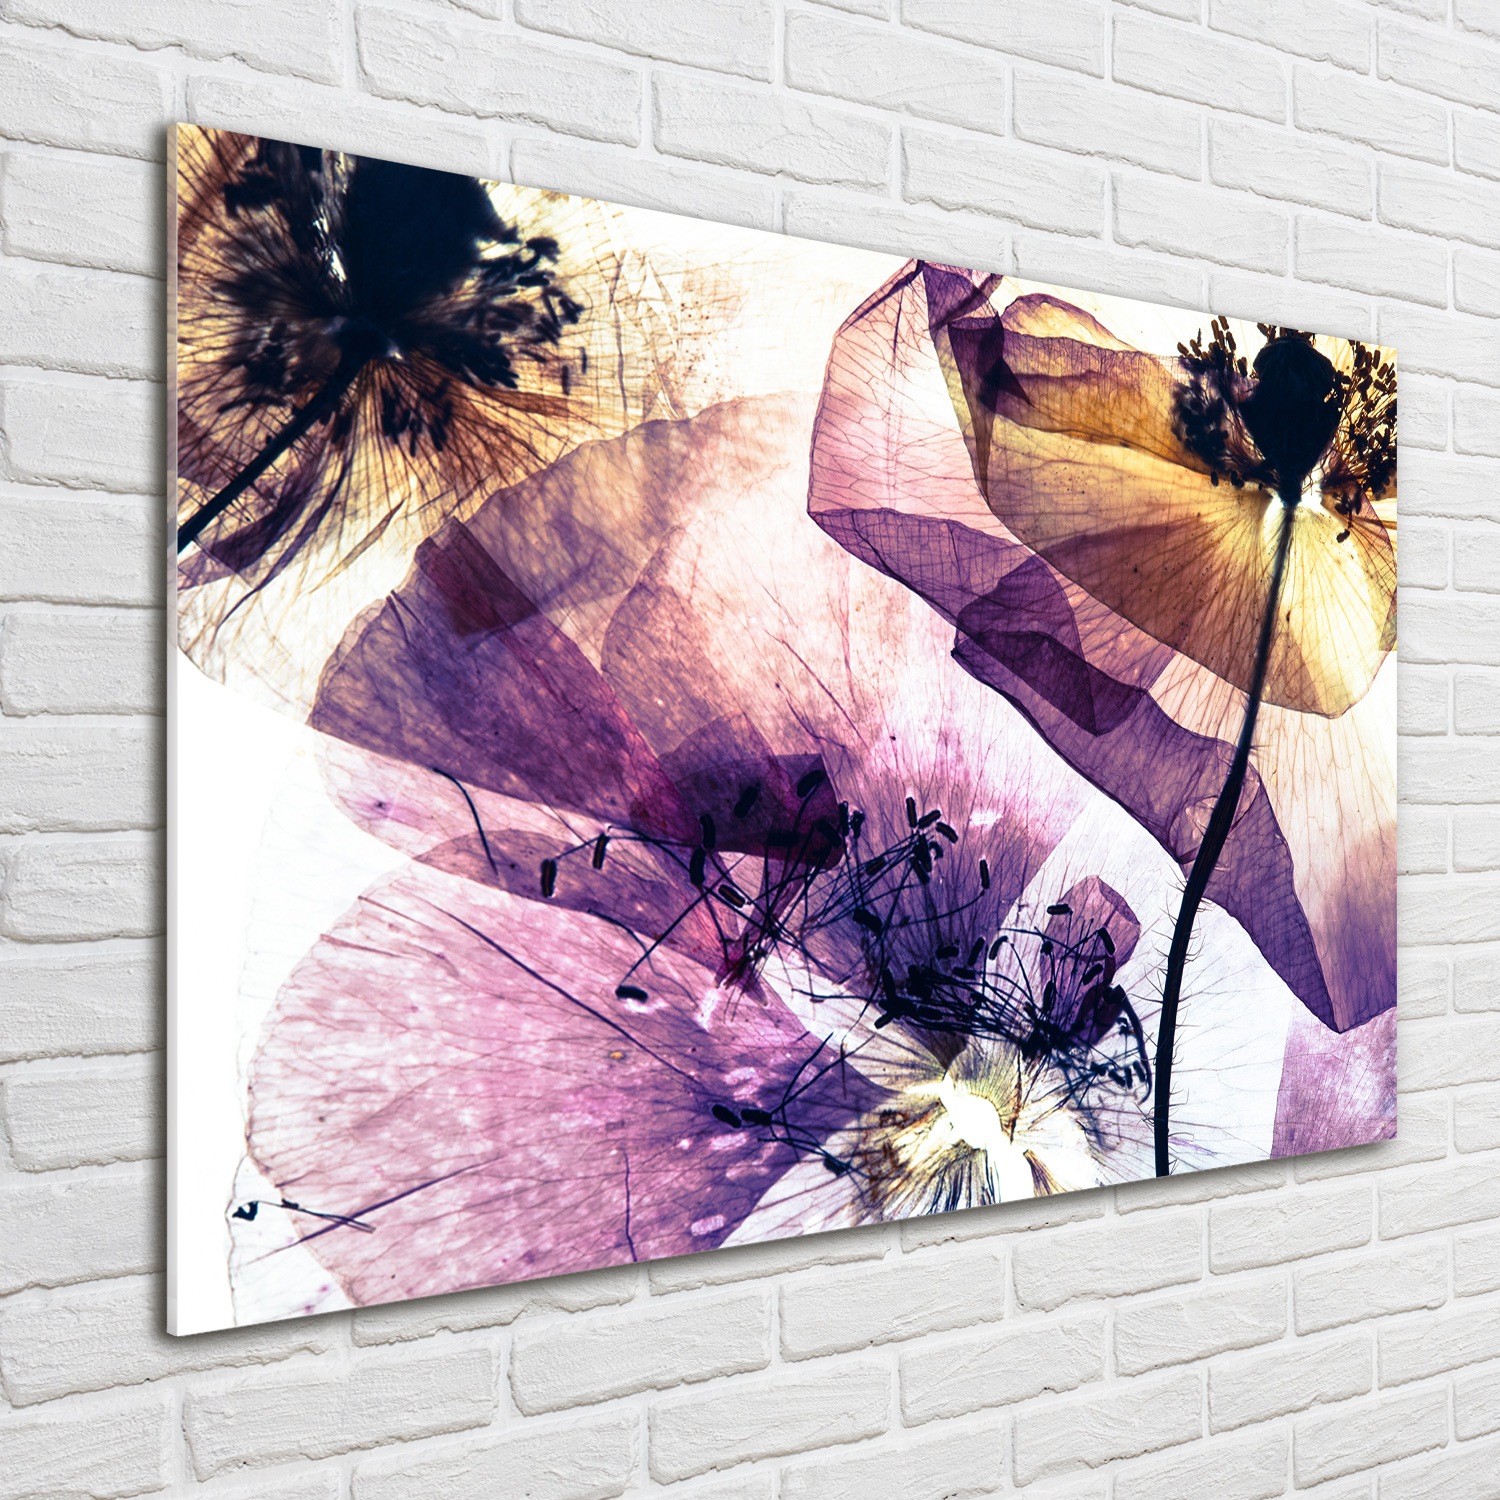 Glas-Bild Wandbilder Druck auf Glas 100x70 Blumen & Pflanzen Trockene Mohnblumen